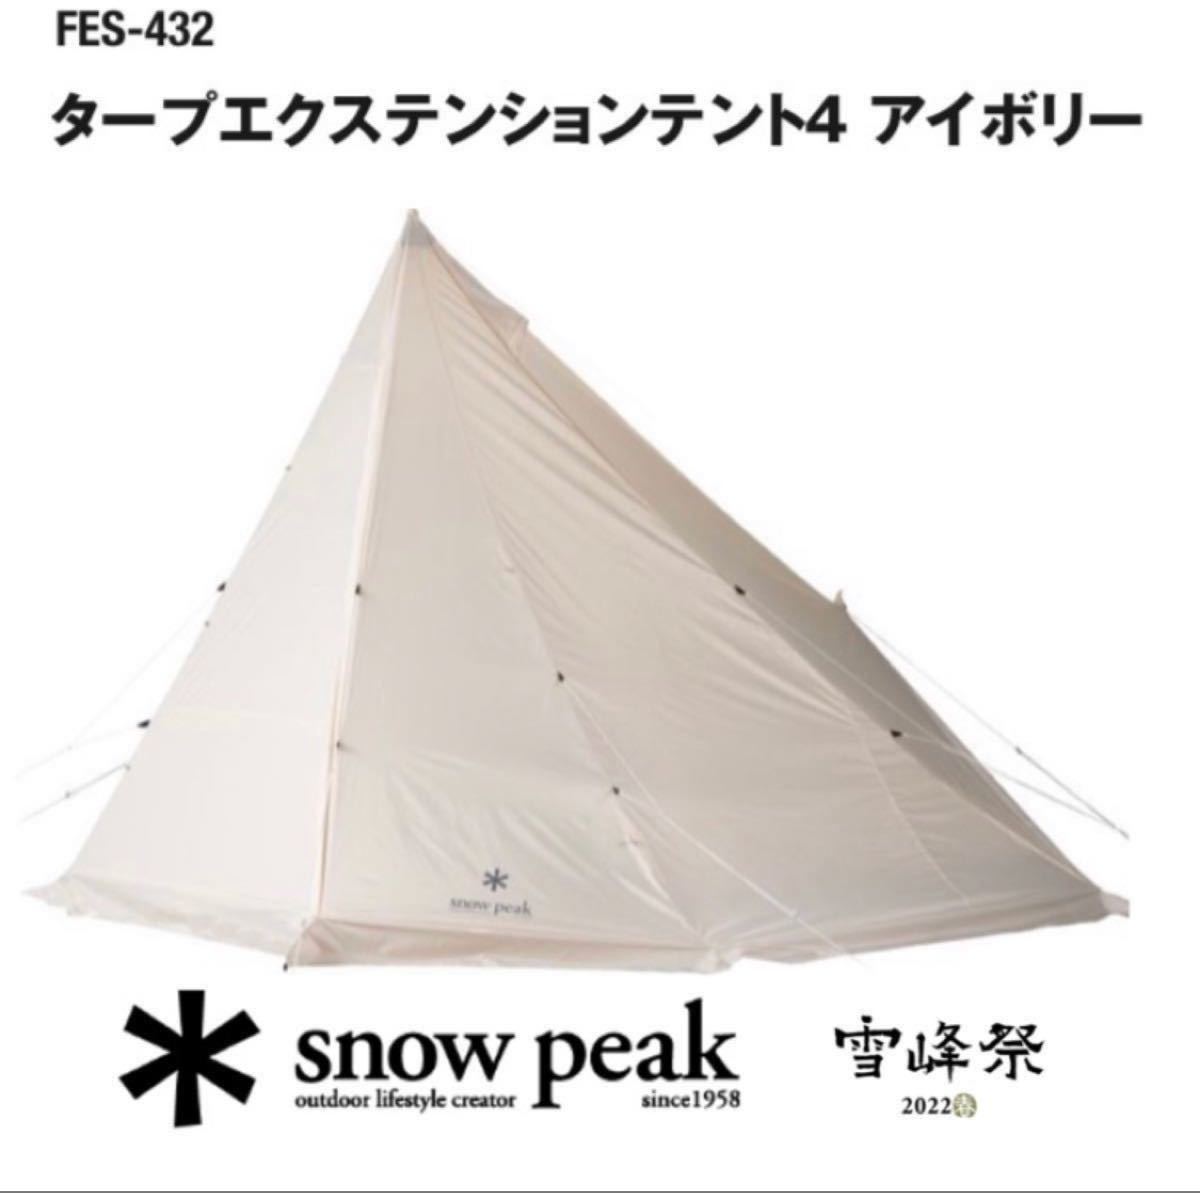 スノーピーク タープ エクステンション テント4 アイボリー テント